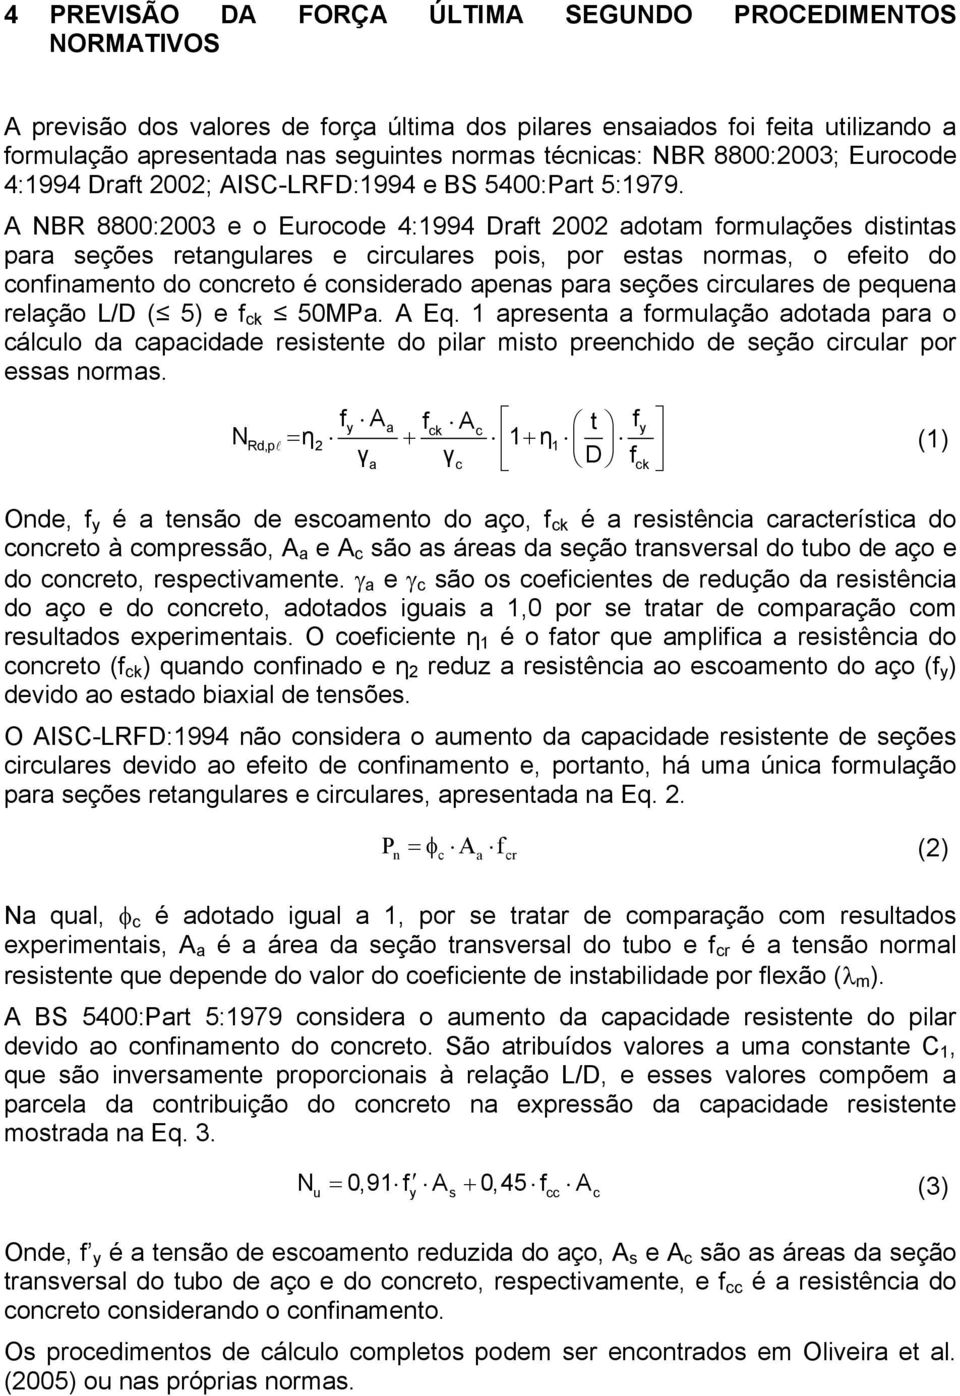 A NBR 8800:2003 e o Eurocode 4:1994 Draft 2002 adotam formulações distintas para seções retangulares e circulares pois, por estas normas, o efeito do confinamento do concreto é considerado apenas